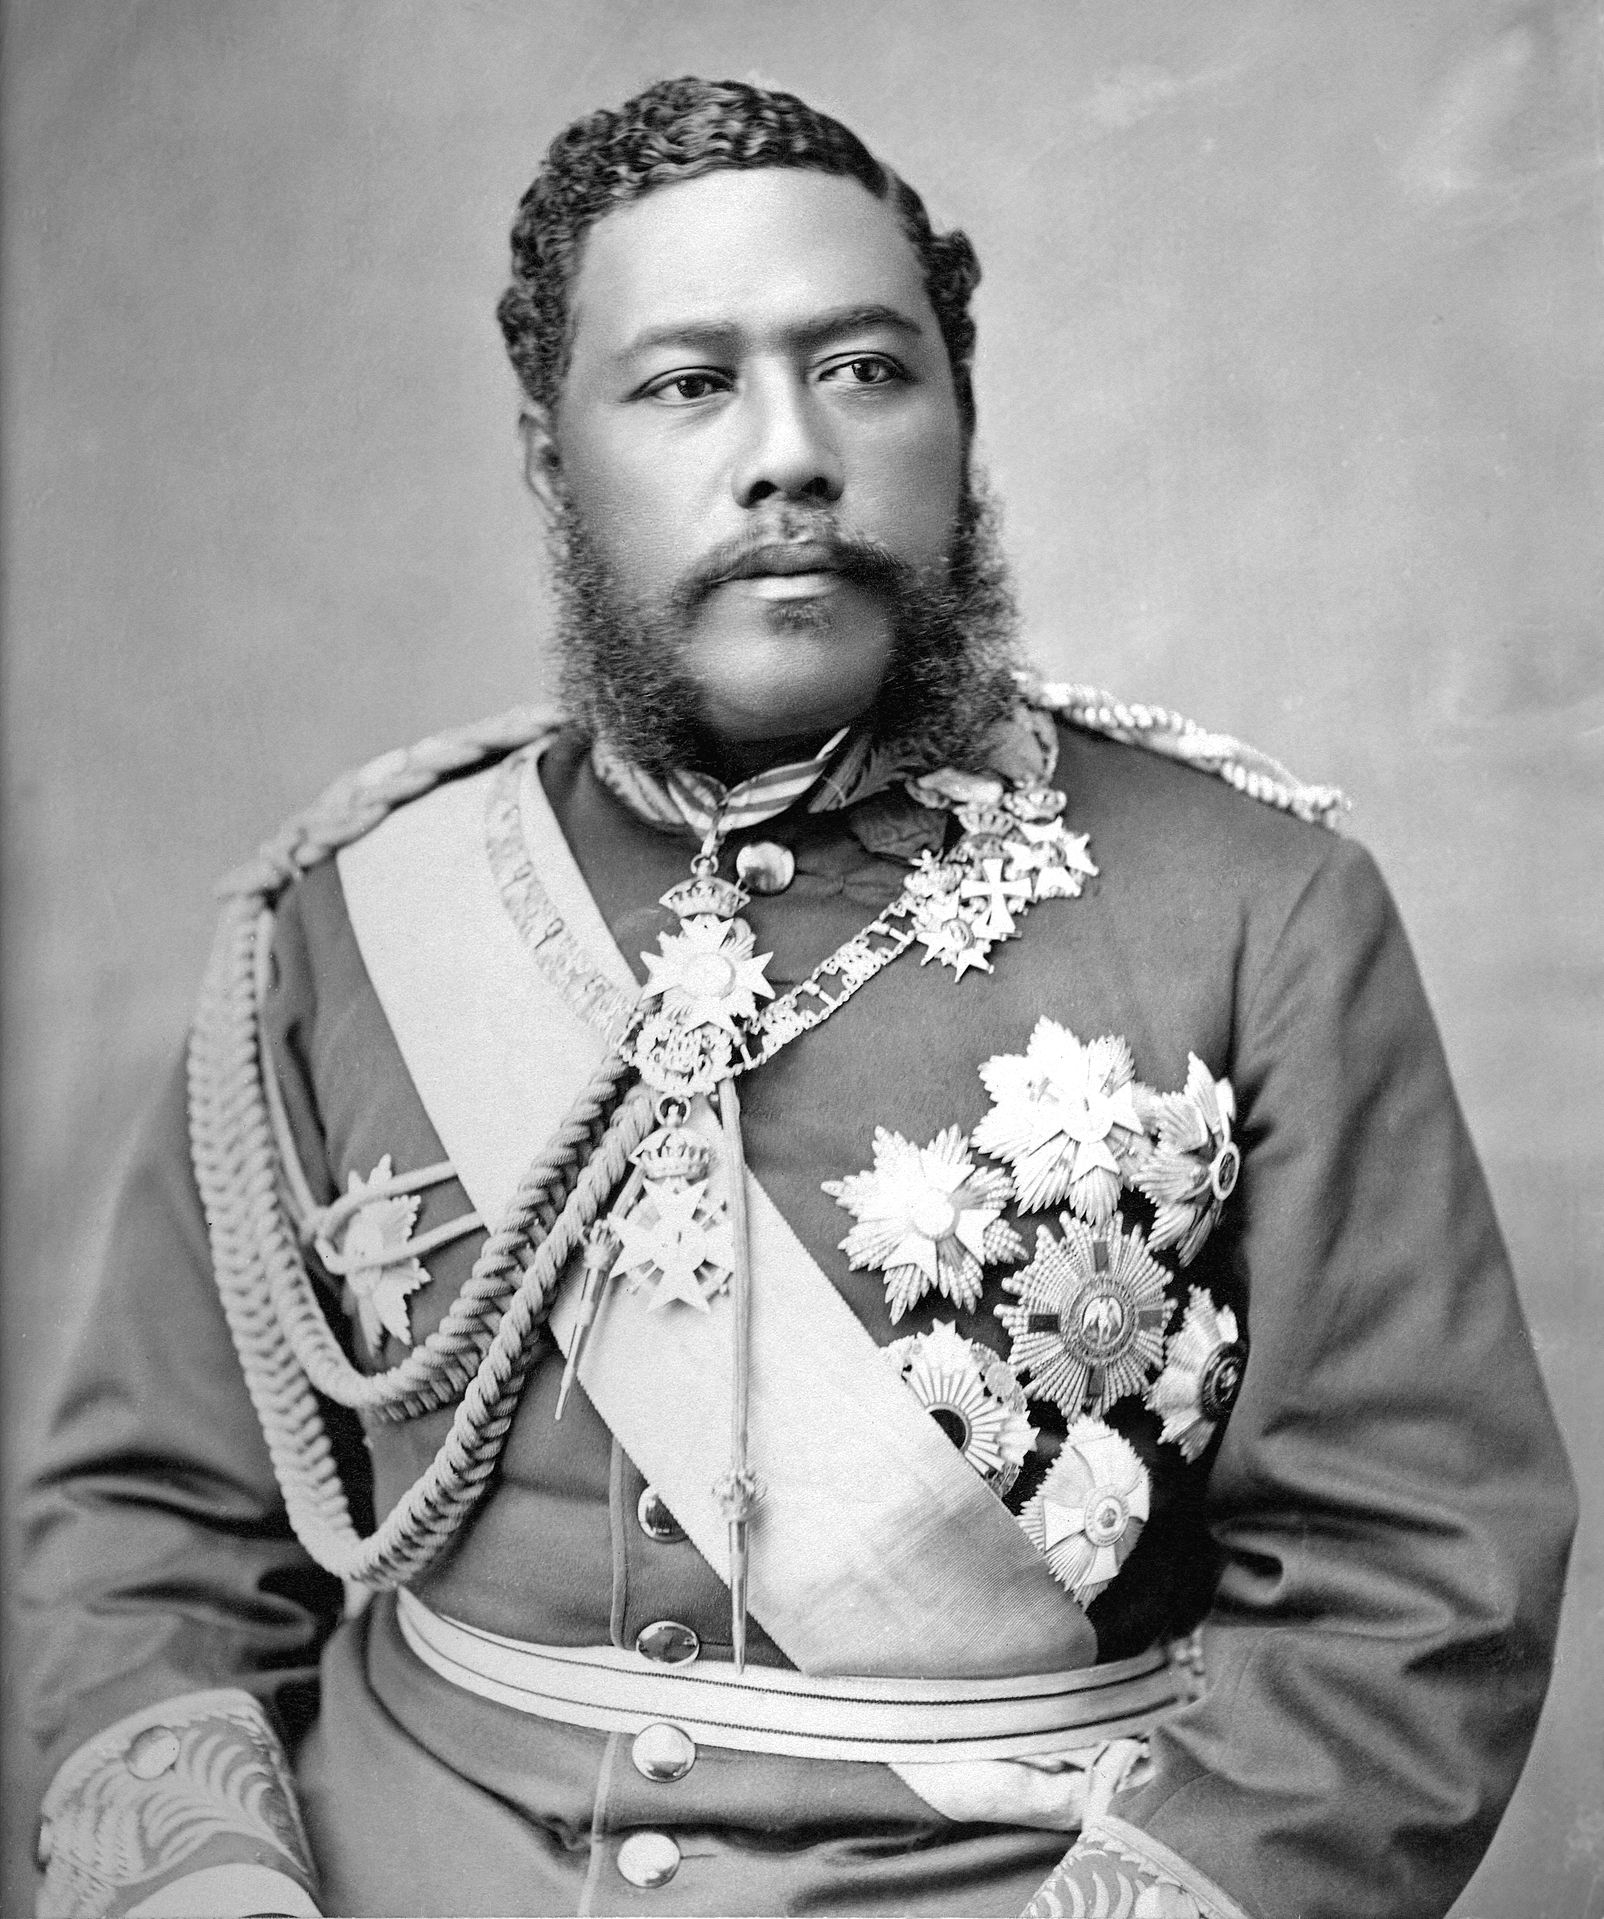 King Kalakaua